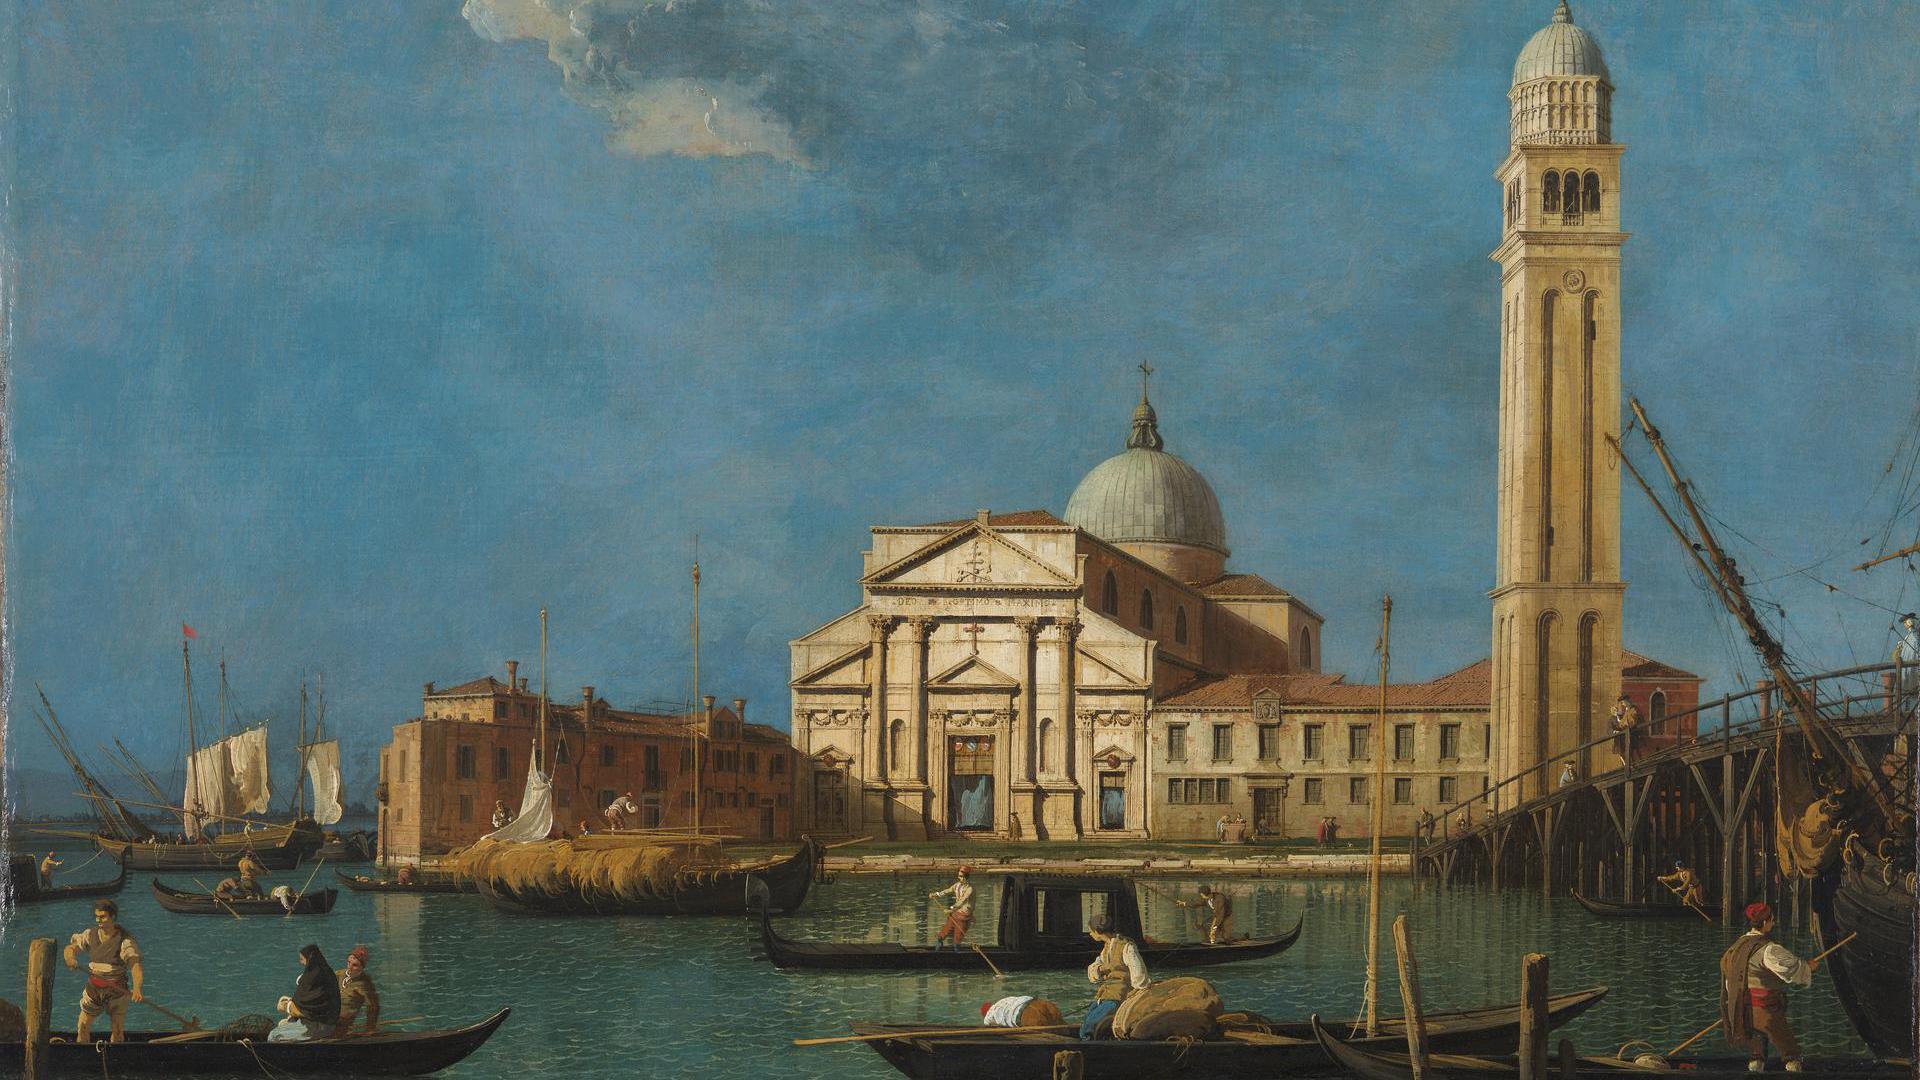 Venice: S. Pietro in Castello by Canaletto